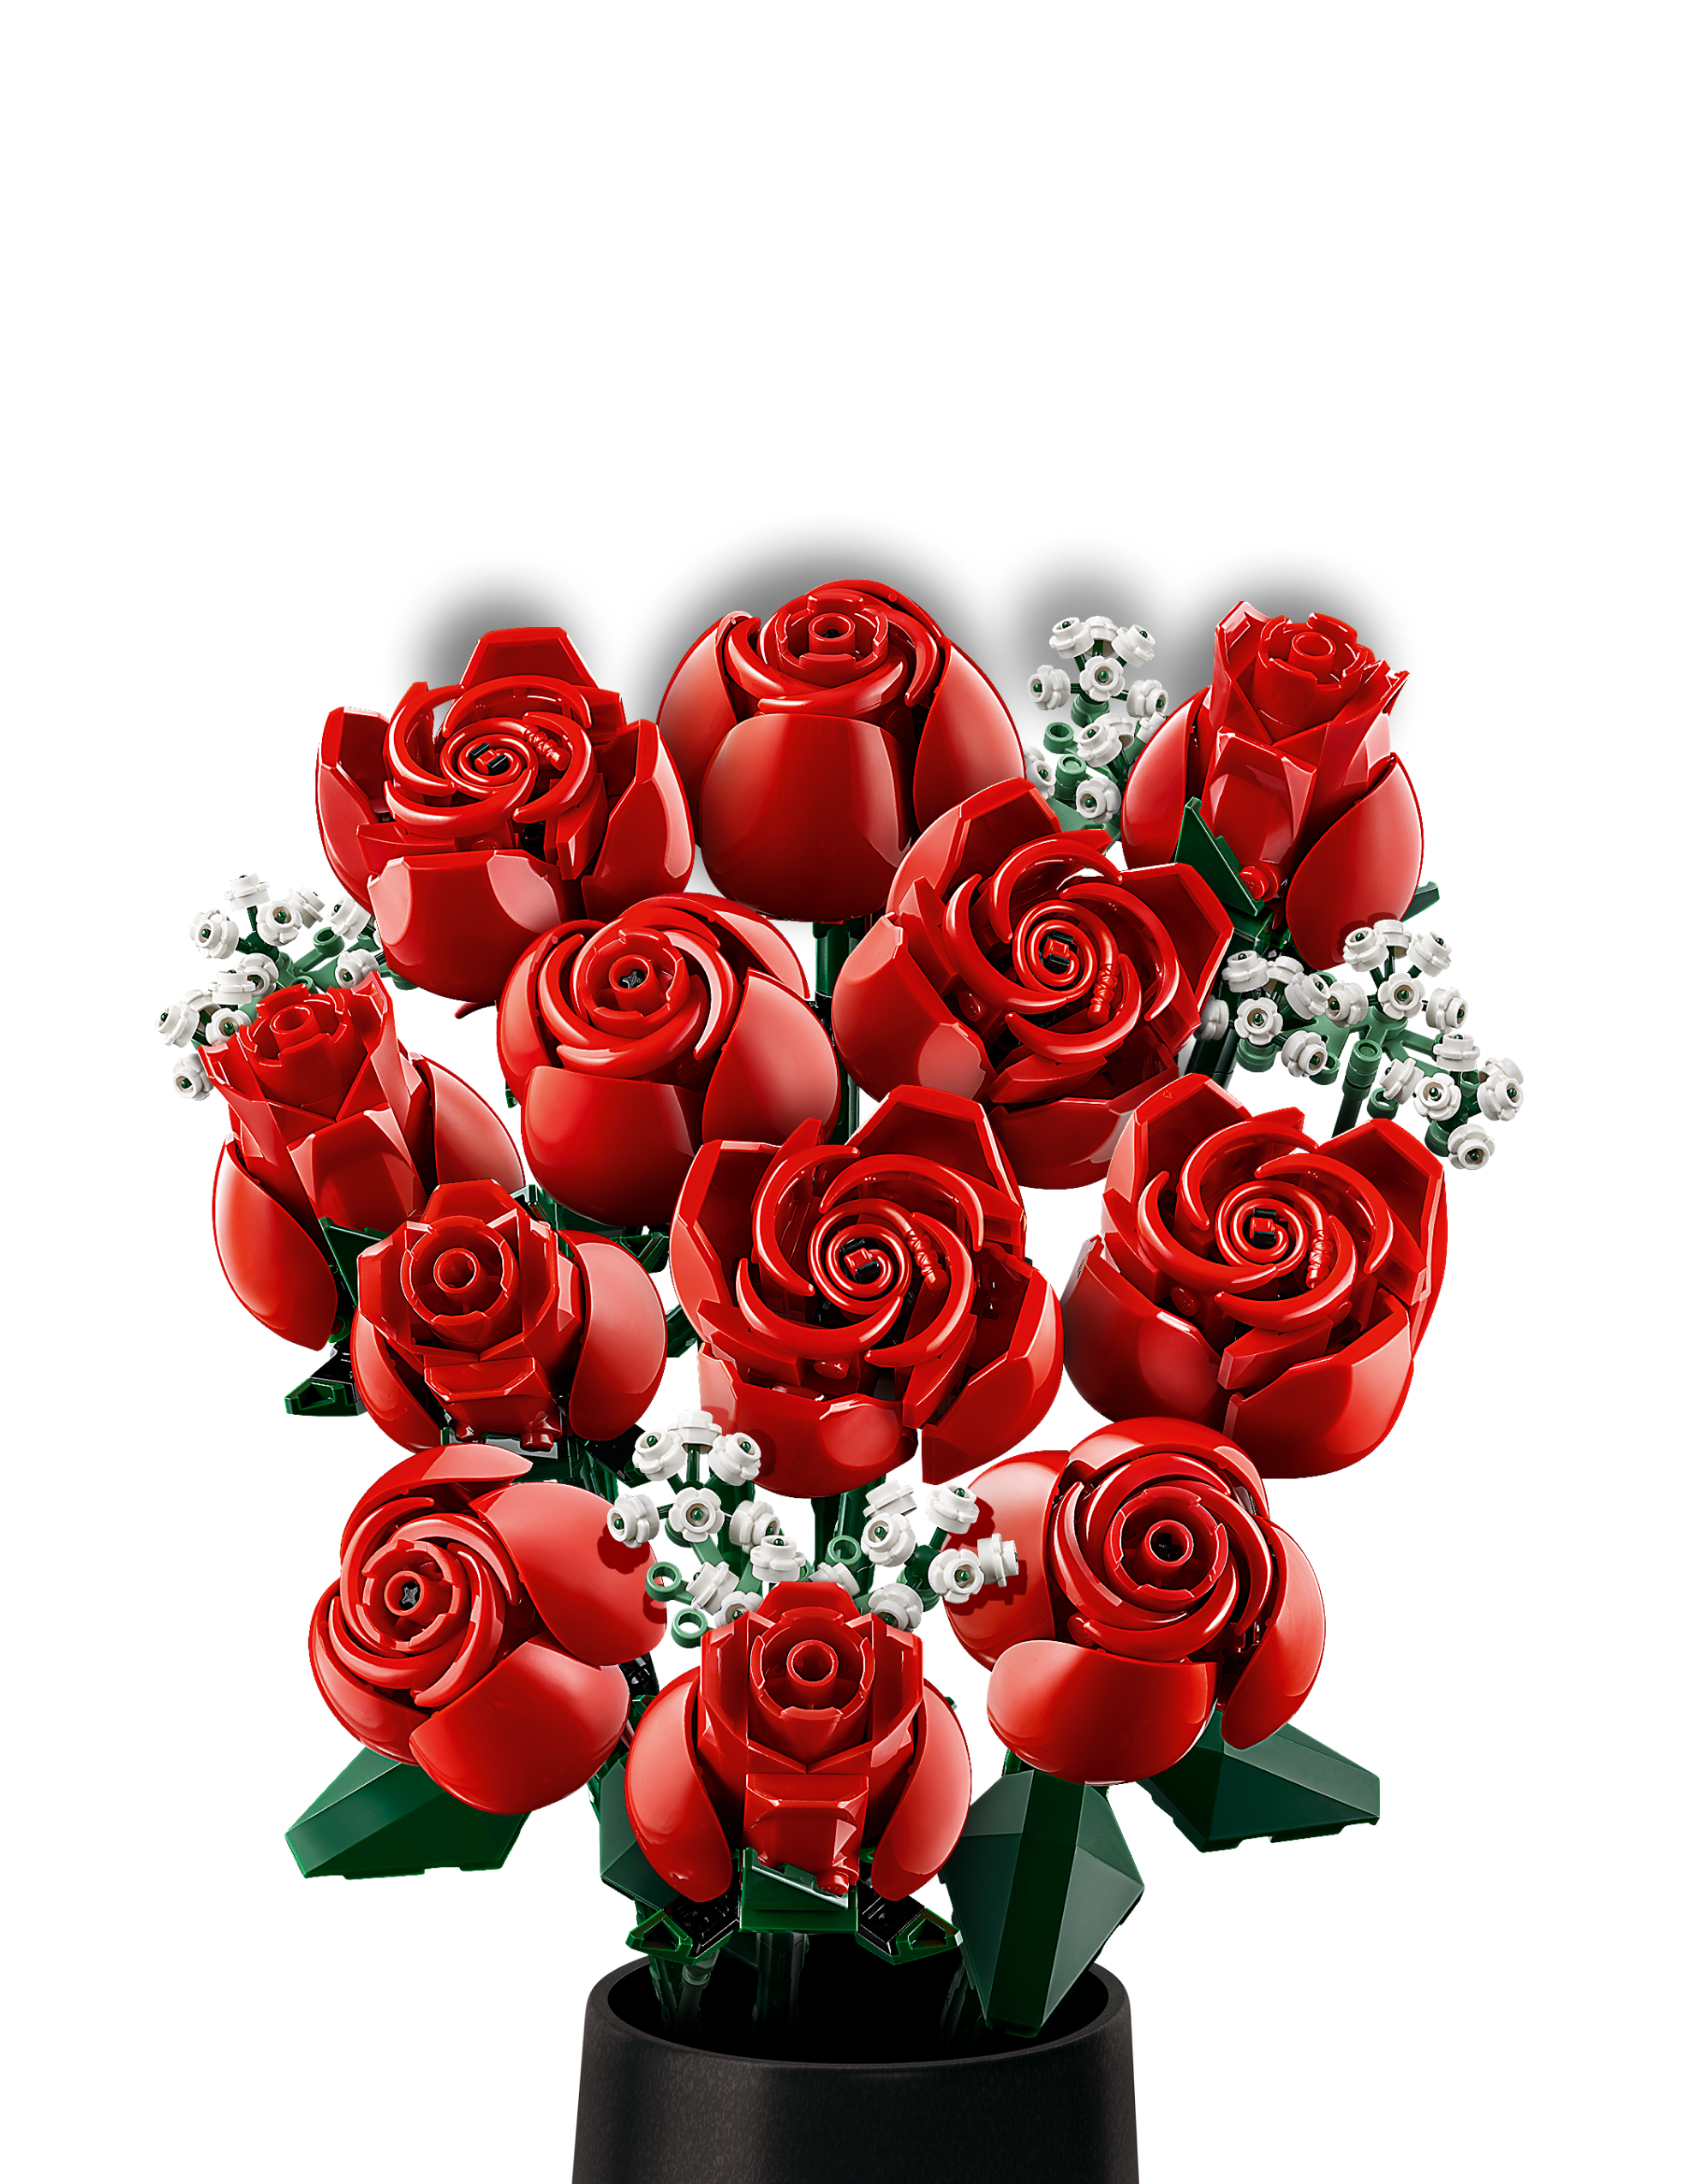 Rose, girasoli, fiori di loto kit costruzioni fiori mattoncini Lego –  hobbyshopbomboniere